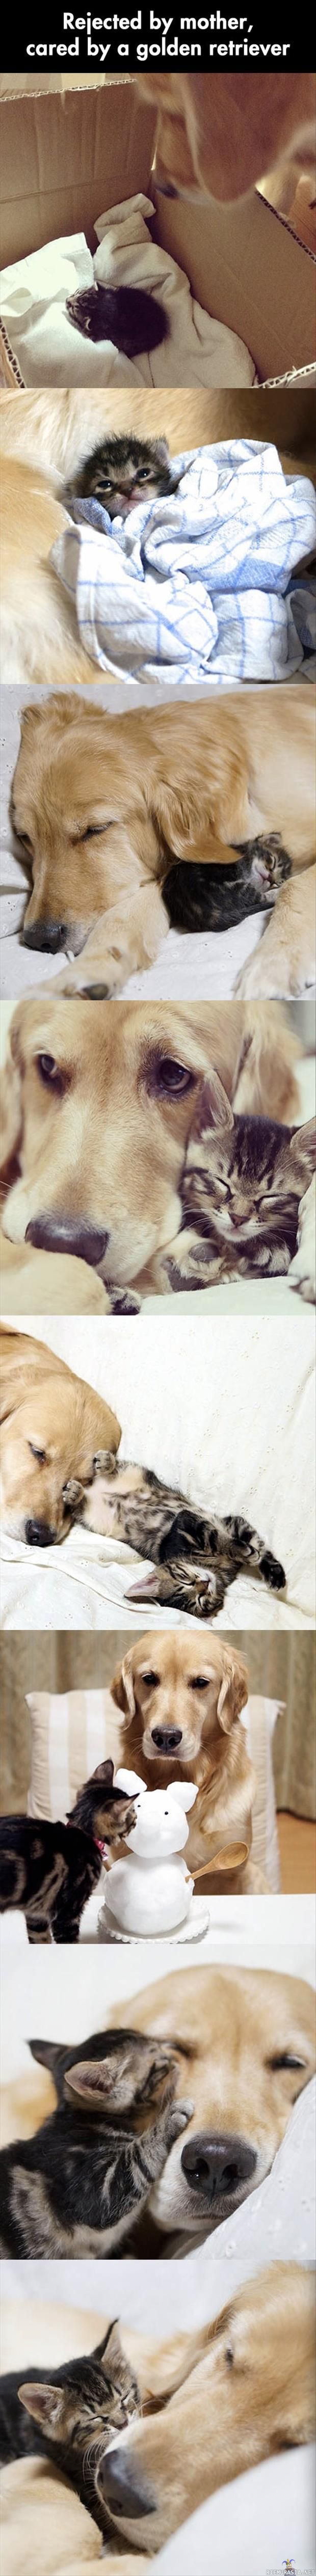 Kissanpennun uusi emo - Kultainen noutaja pitää pienestä kissanpennusta huolta